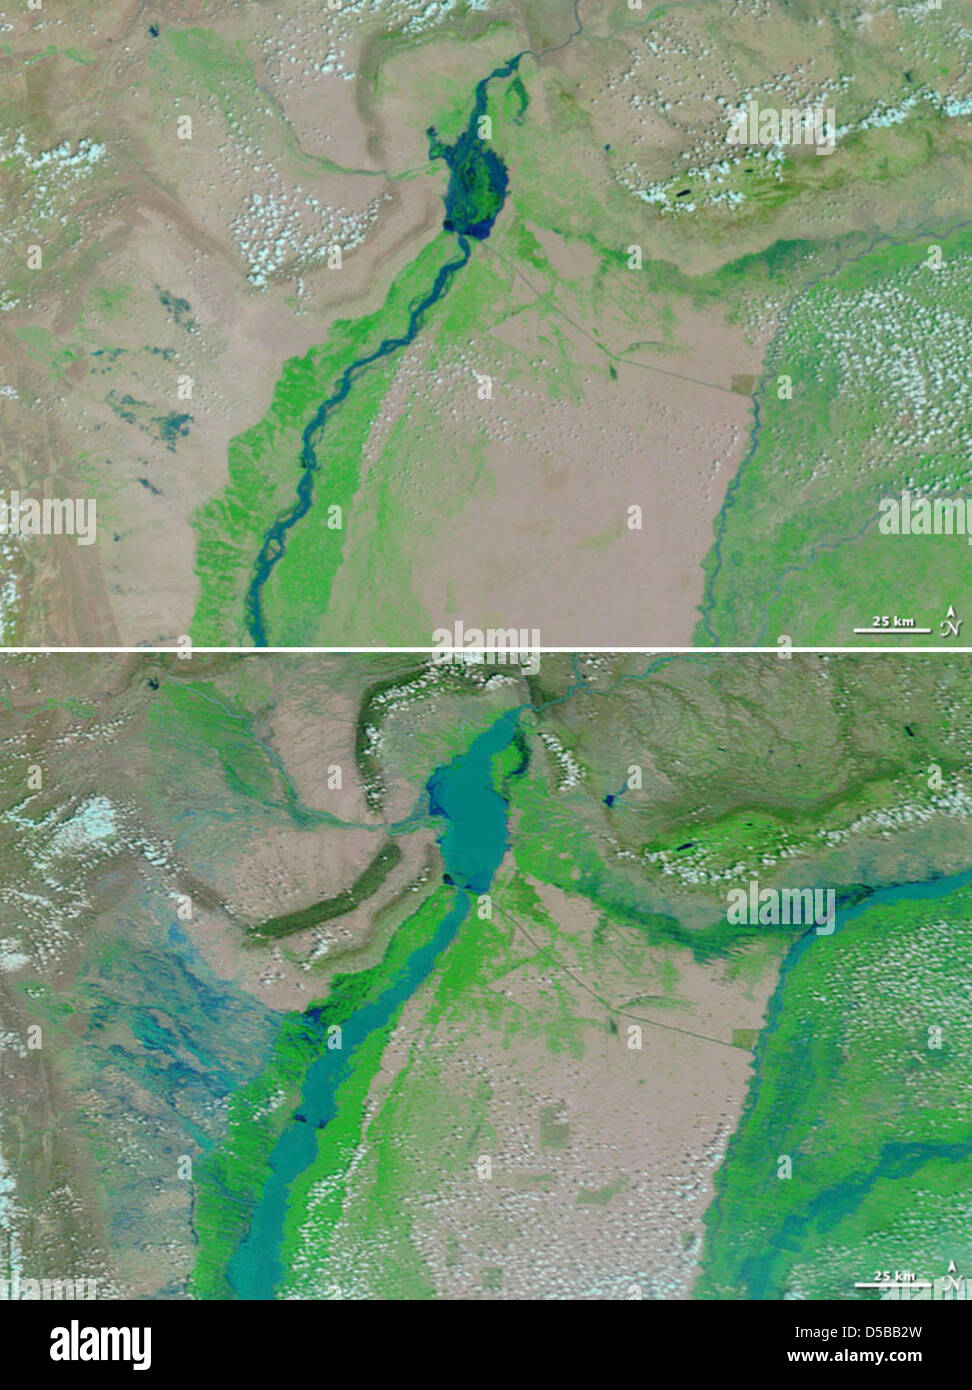 Una Terra della NASA handout combo immagine mostra l'Indus river valley su 01 Agosto 2009 (in alto) e il 31 luglio 2010 (fondo) dopo le pesanti piogge monsoniche. L allagamento è chiaramente visibile. Più di 1.500 persone sono morte e 20 milioni di persone sono colpite dalla catastrofe. Foto: la NASA Terra/dello spettroradiometro MODIS Foto Stock